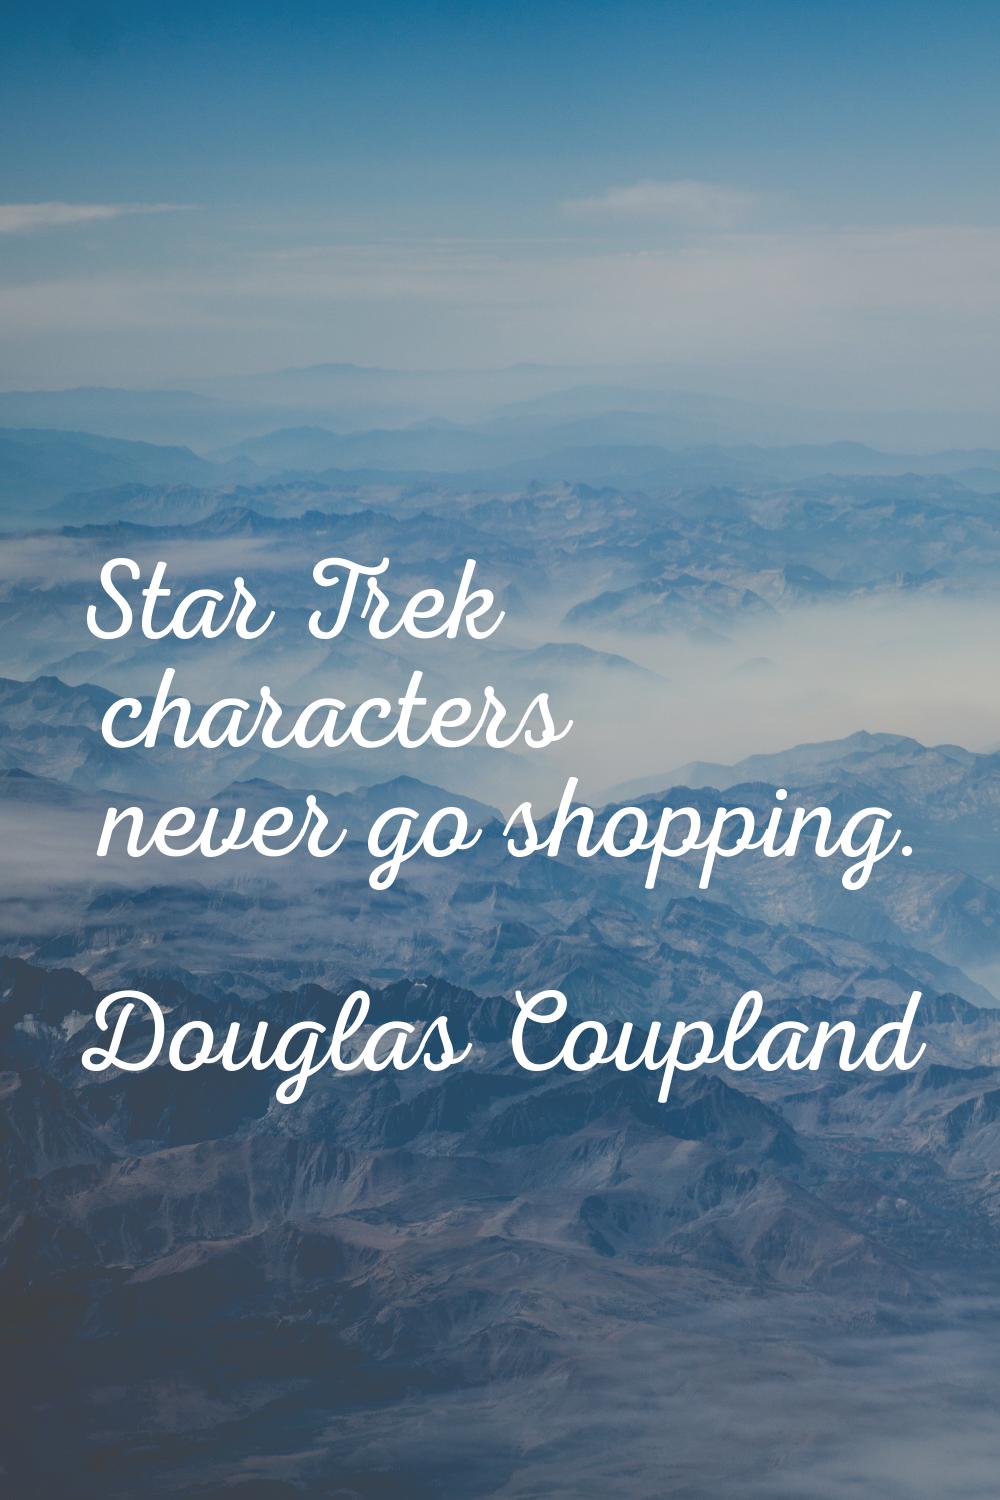 Star Trek characters never go shopping.